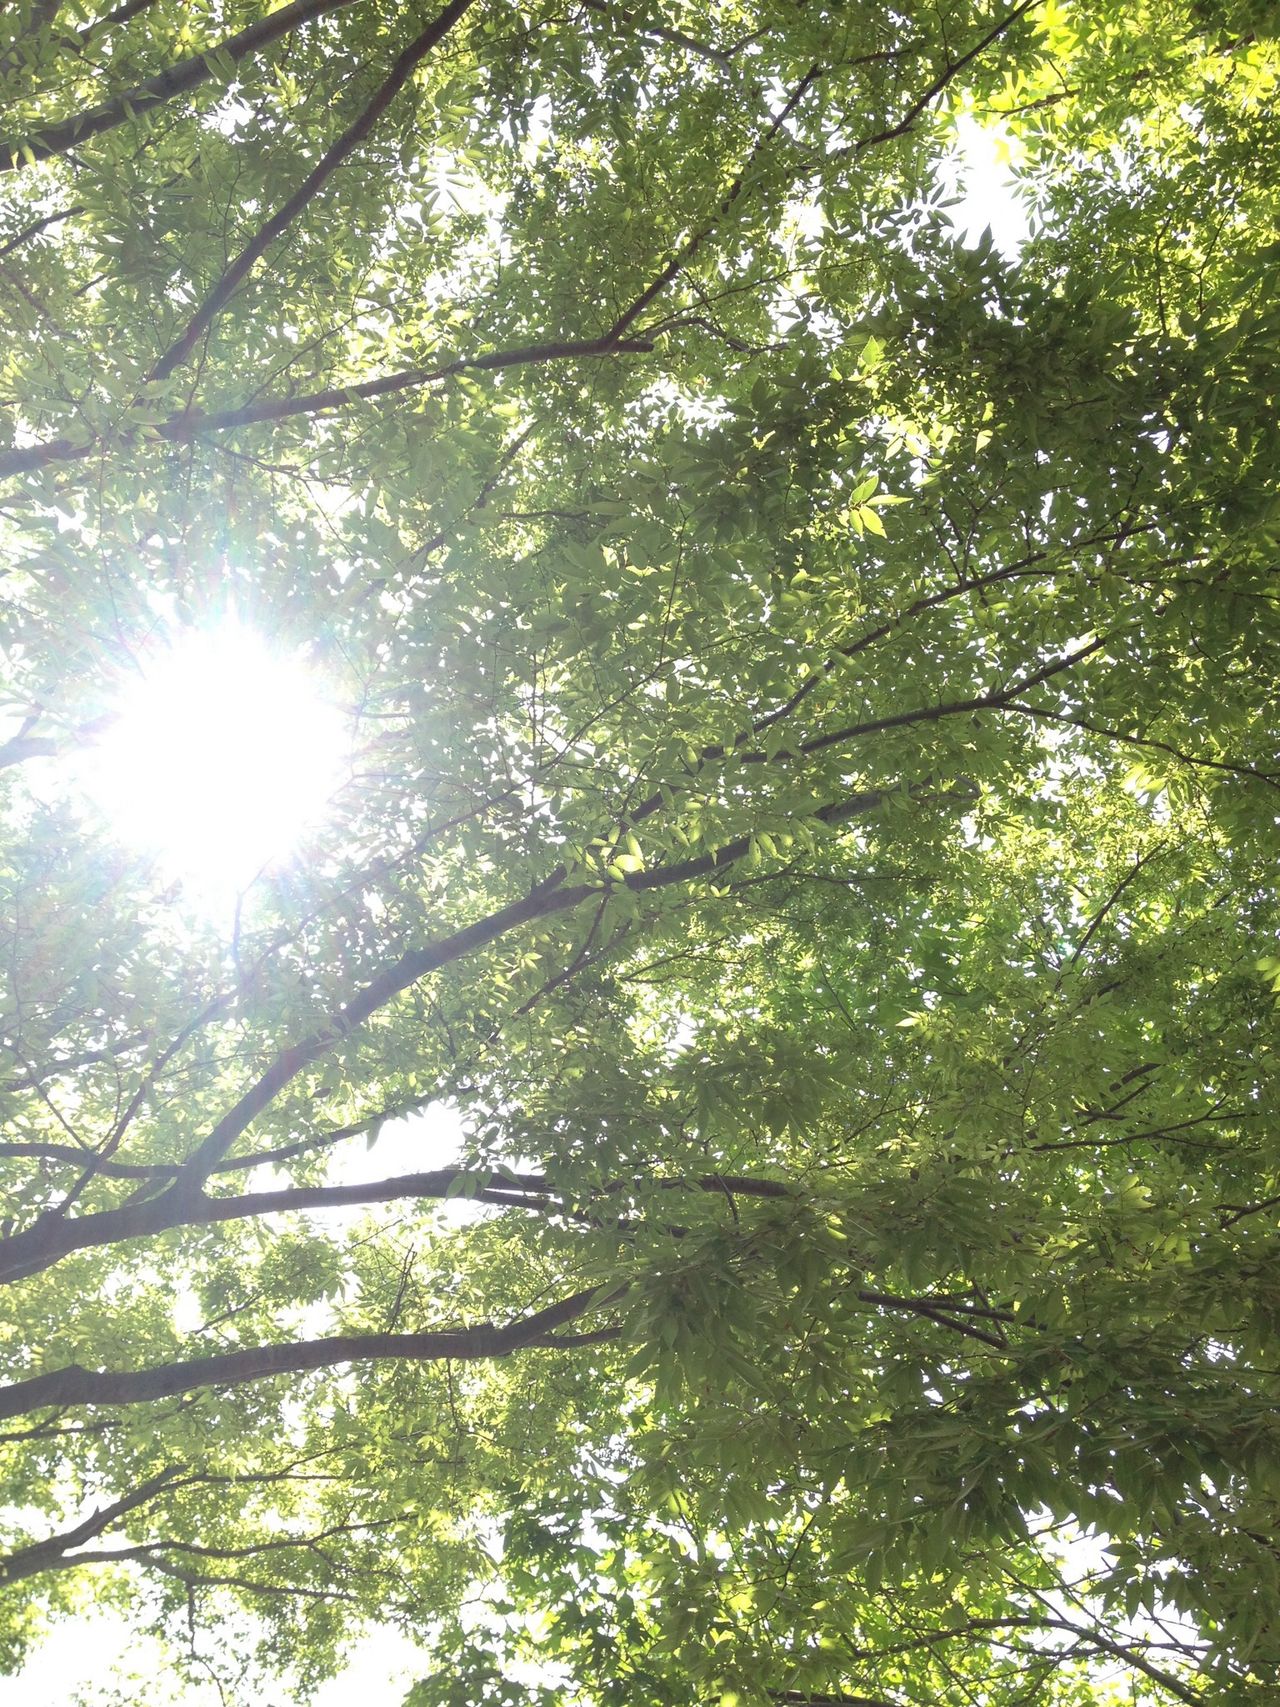 Sunlight filtering through trees